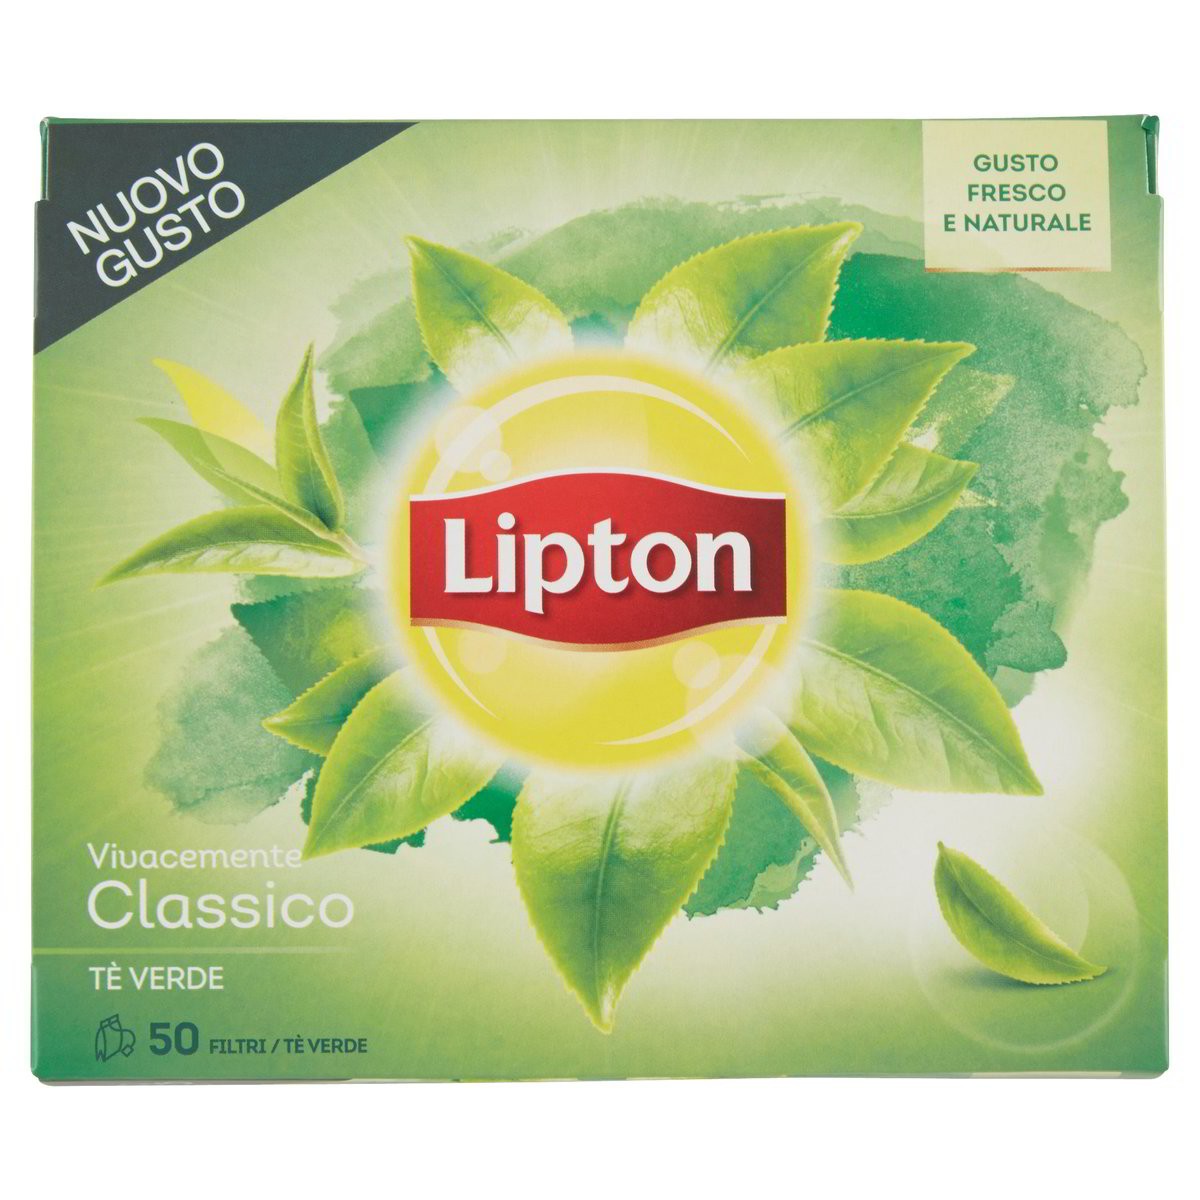 Lipton Tè verde Vivacemente classico